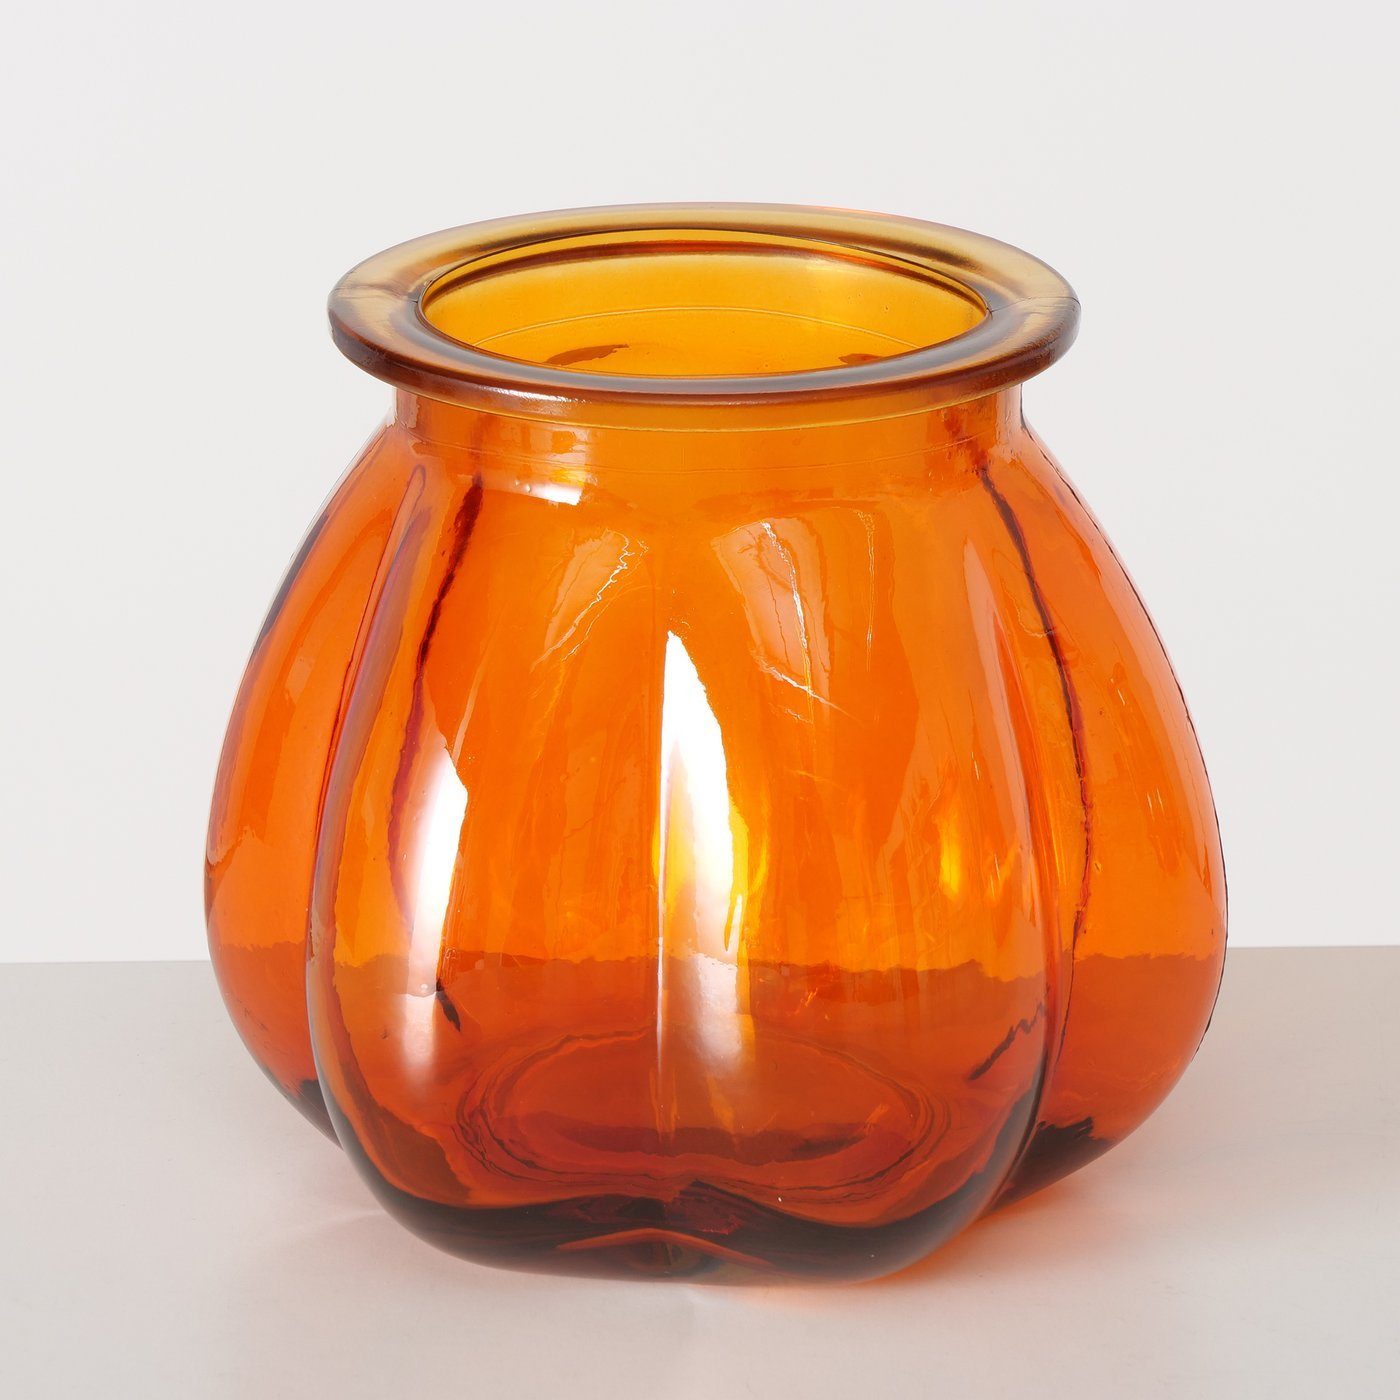 BOLTZE Dekovase 2er Glas Blumenvase in aus Set Vase gelb/orange, "Tangerine"